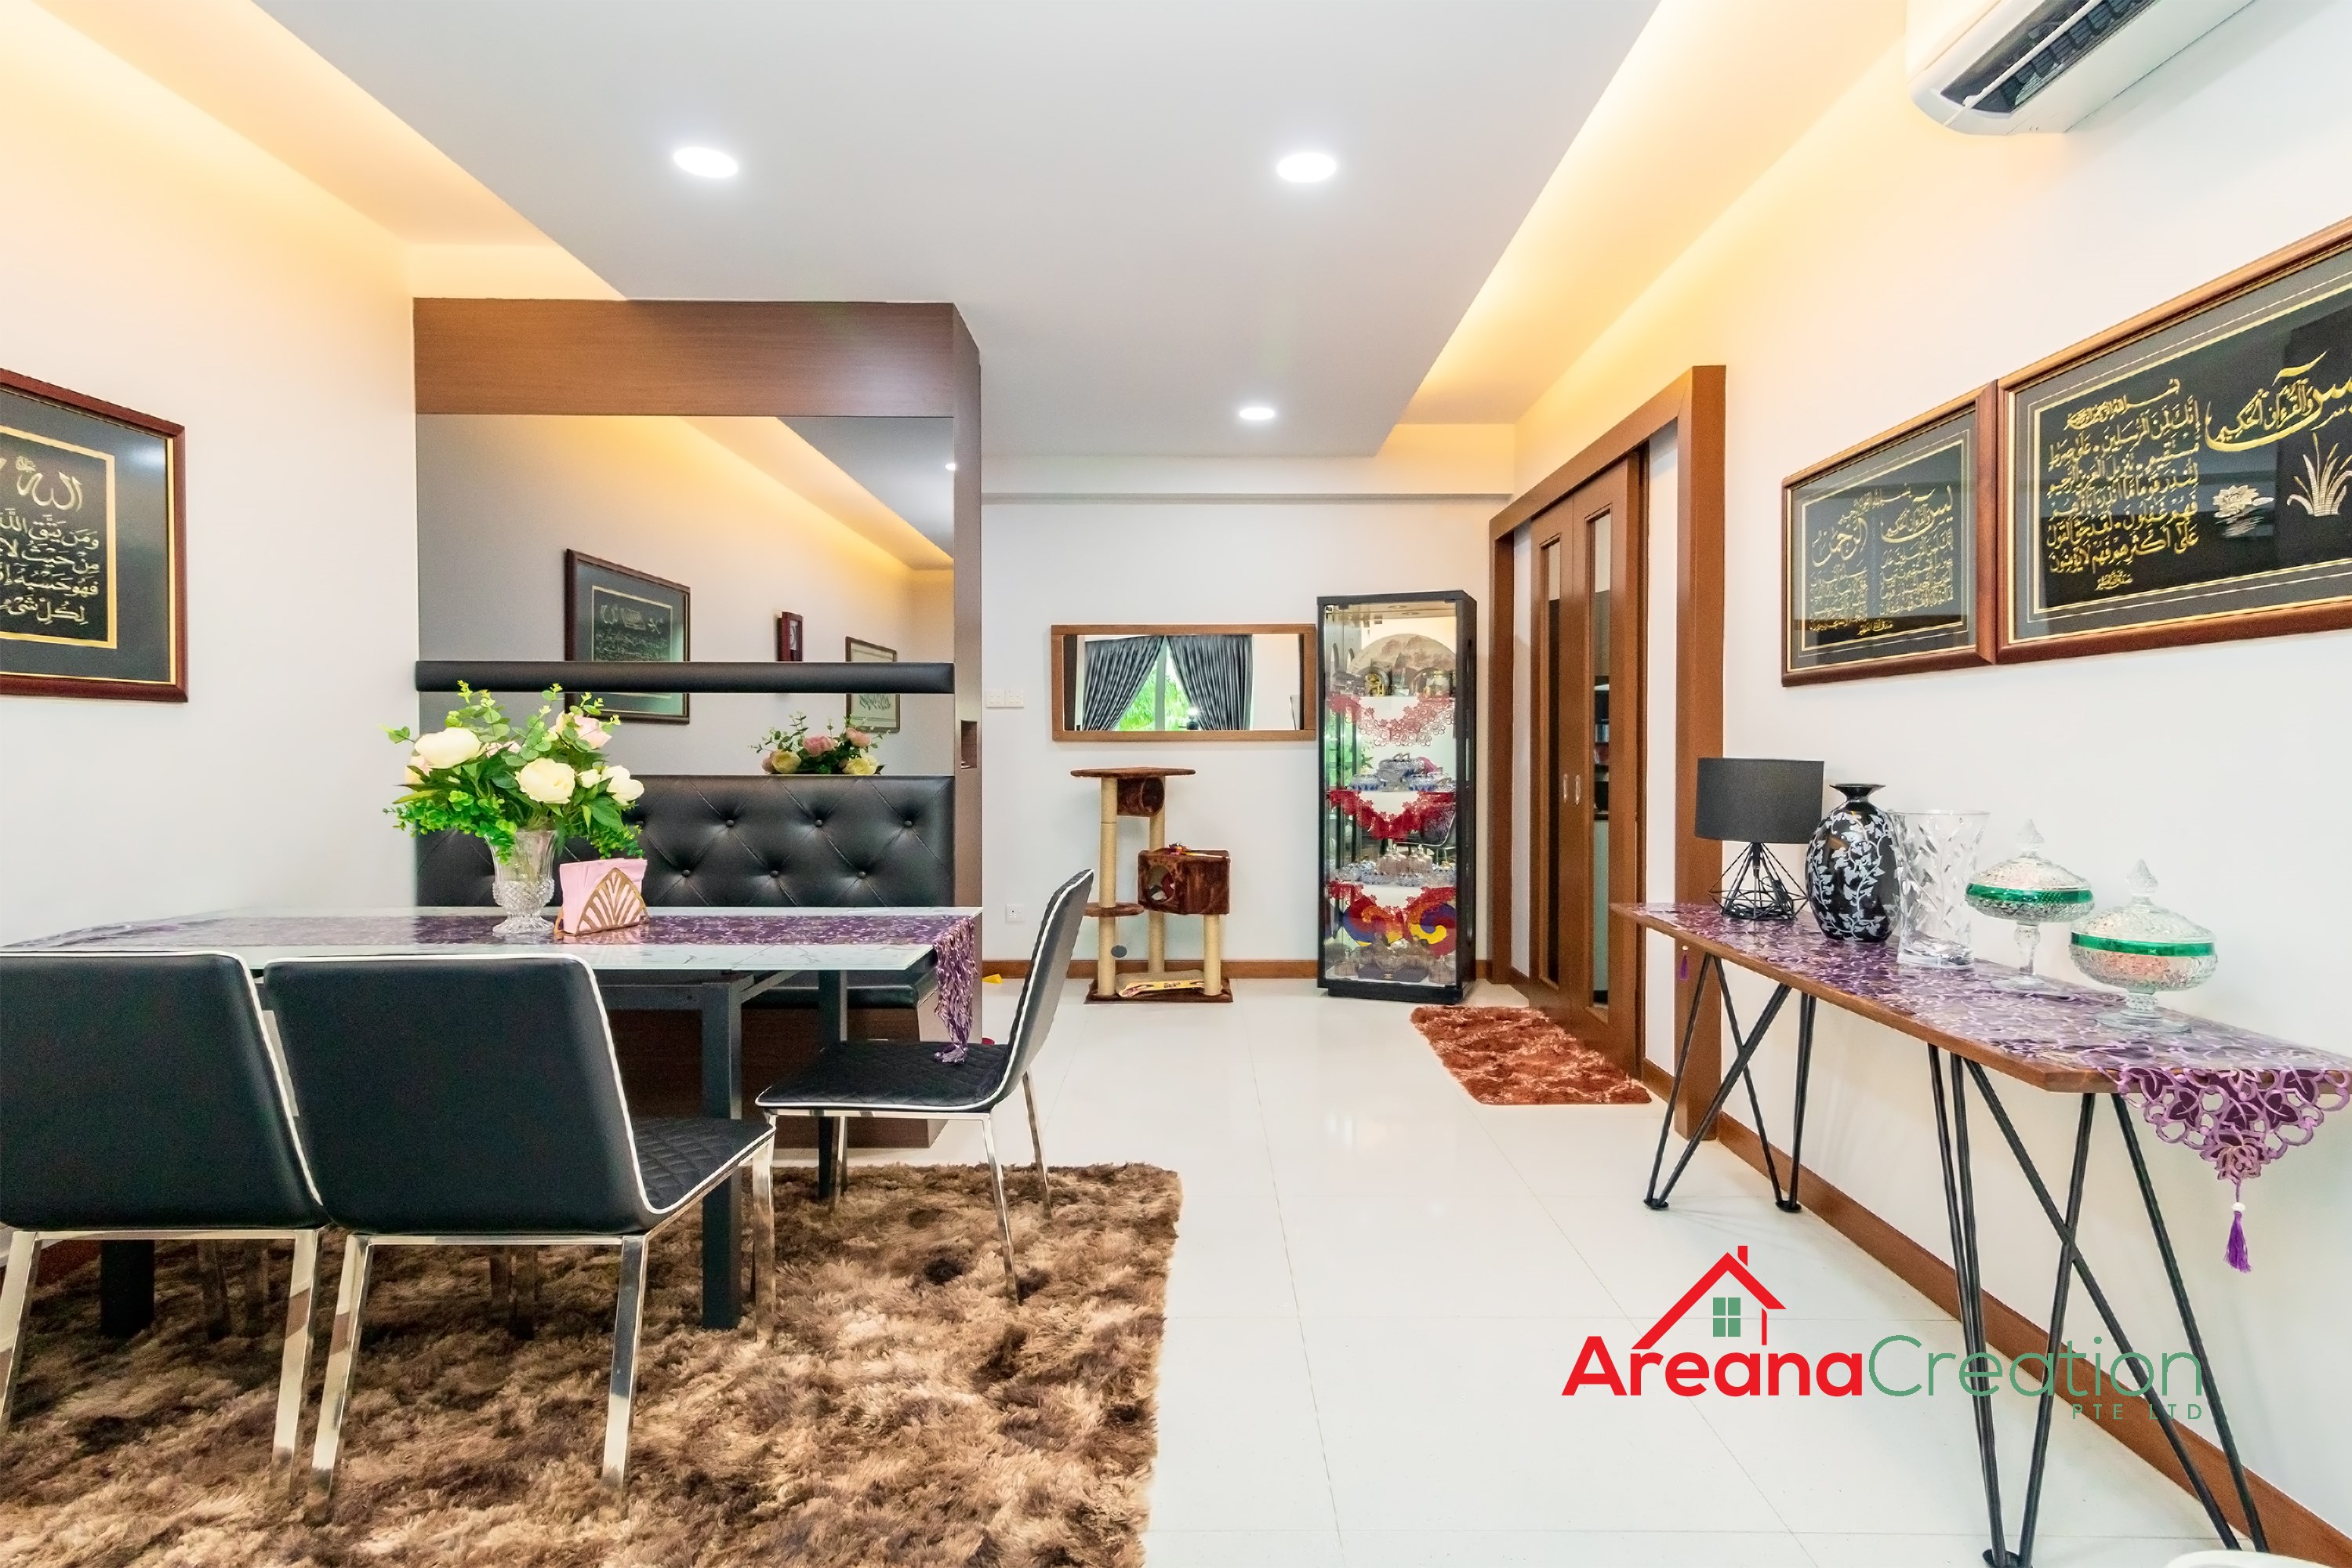 Contemporary Design - Living Room - Condominium - Design by Areana Creation Pte Ltd